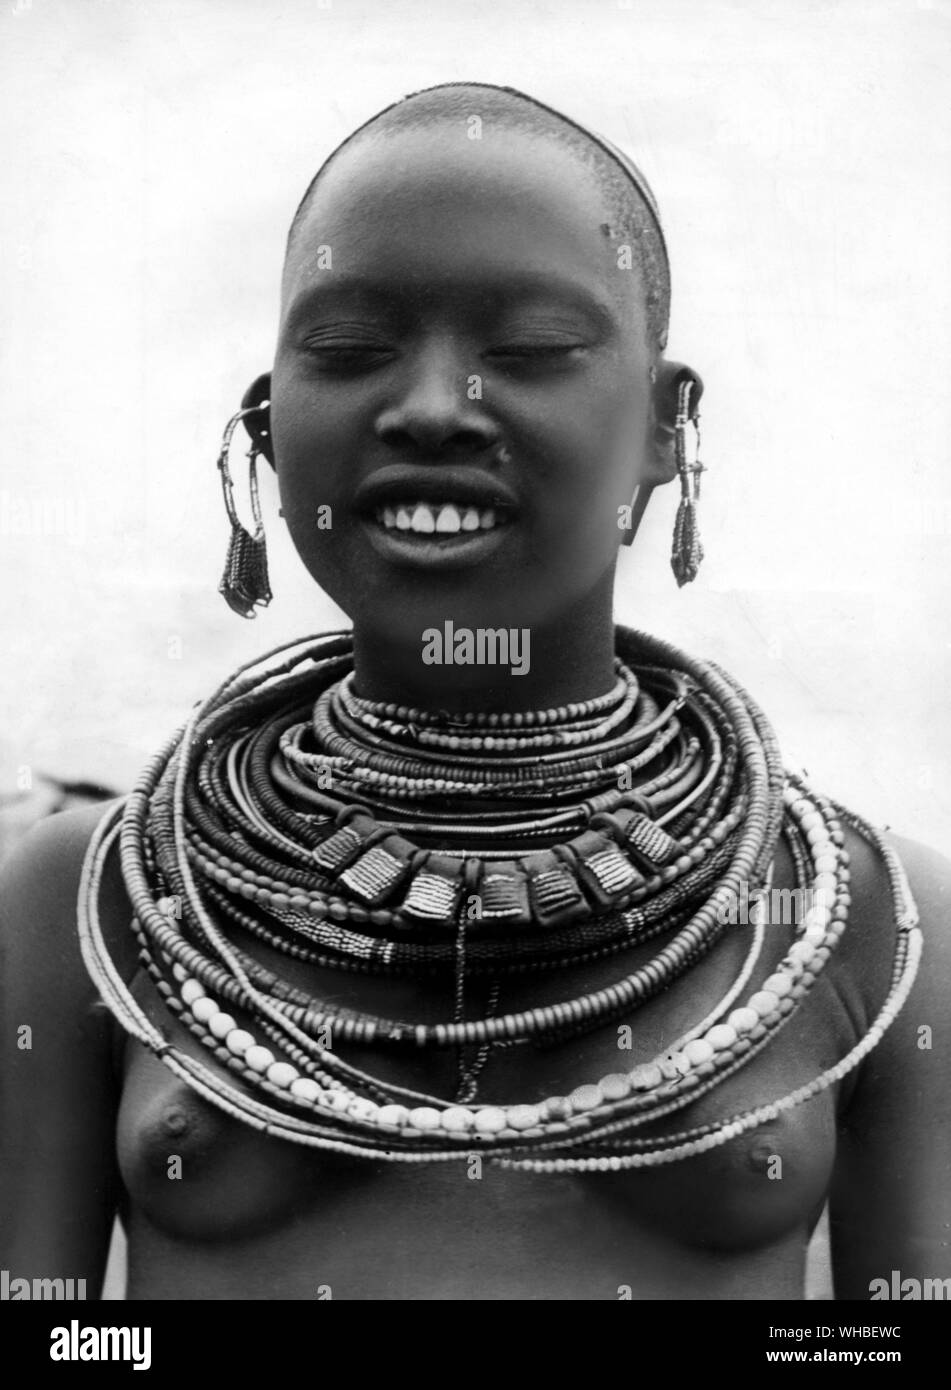 Perles de toutes les tailles et de toutes les couleurs ornent le cou de cette jeune fille Masai.. Banque D'Images